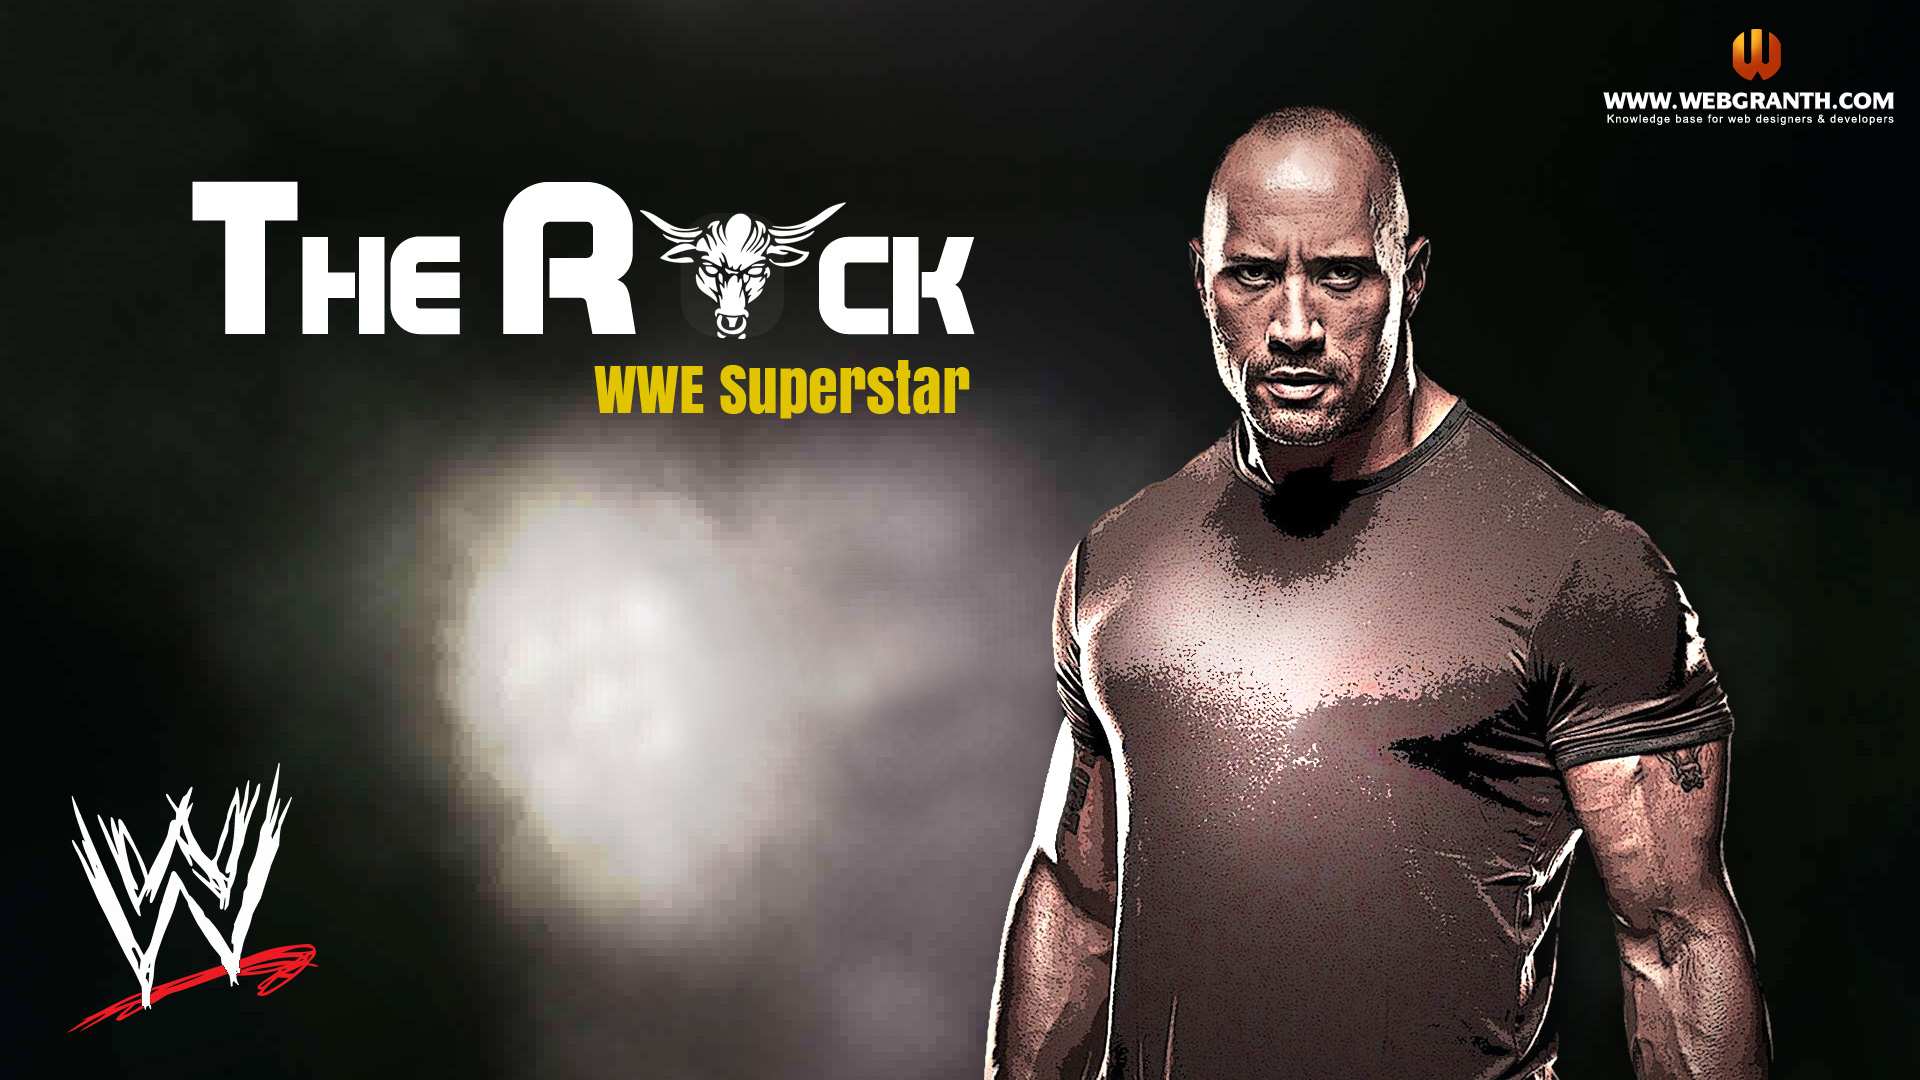 WWE The Rock Dwayne Johnson HD Wallpapers For Desktop